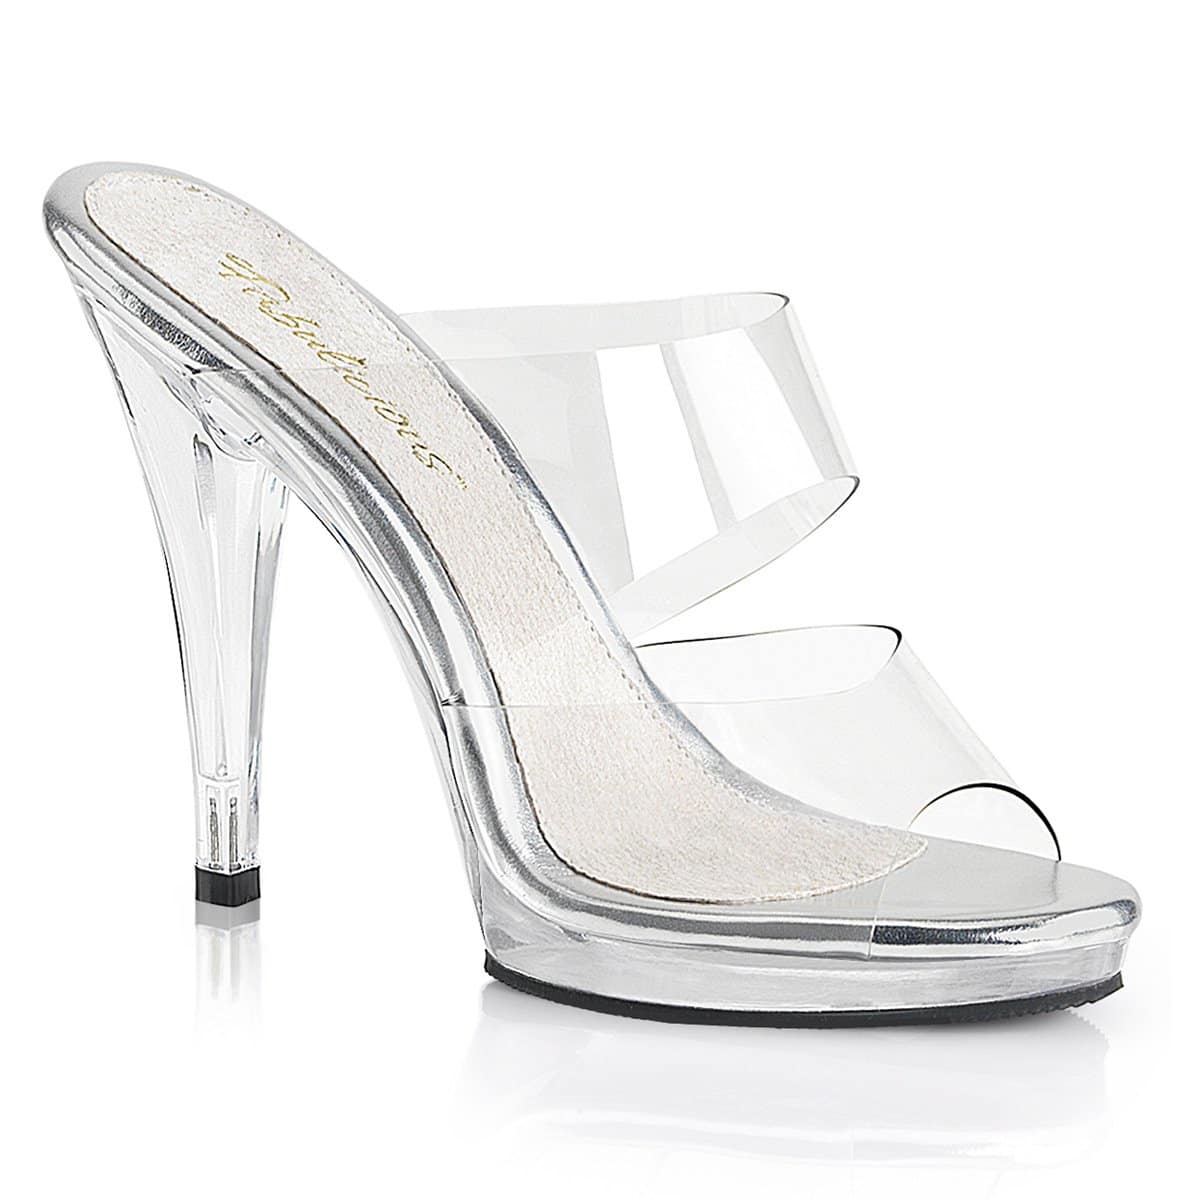 2 inch stiletto heels